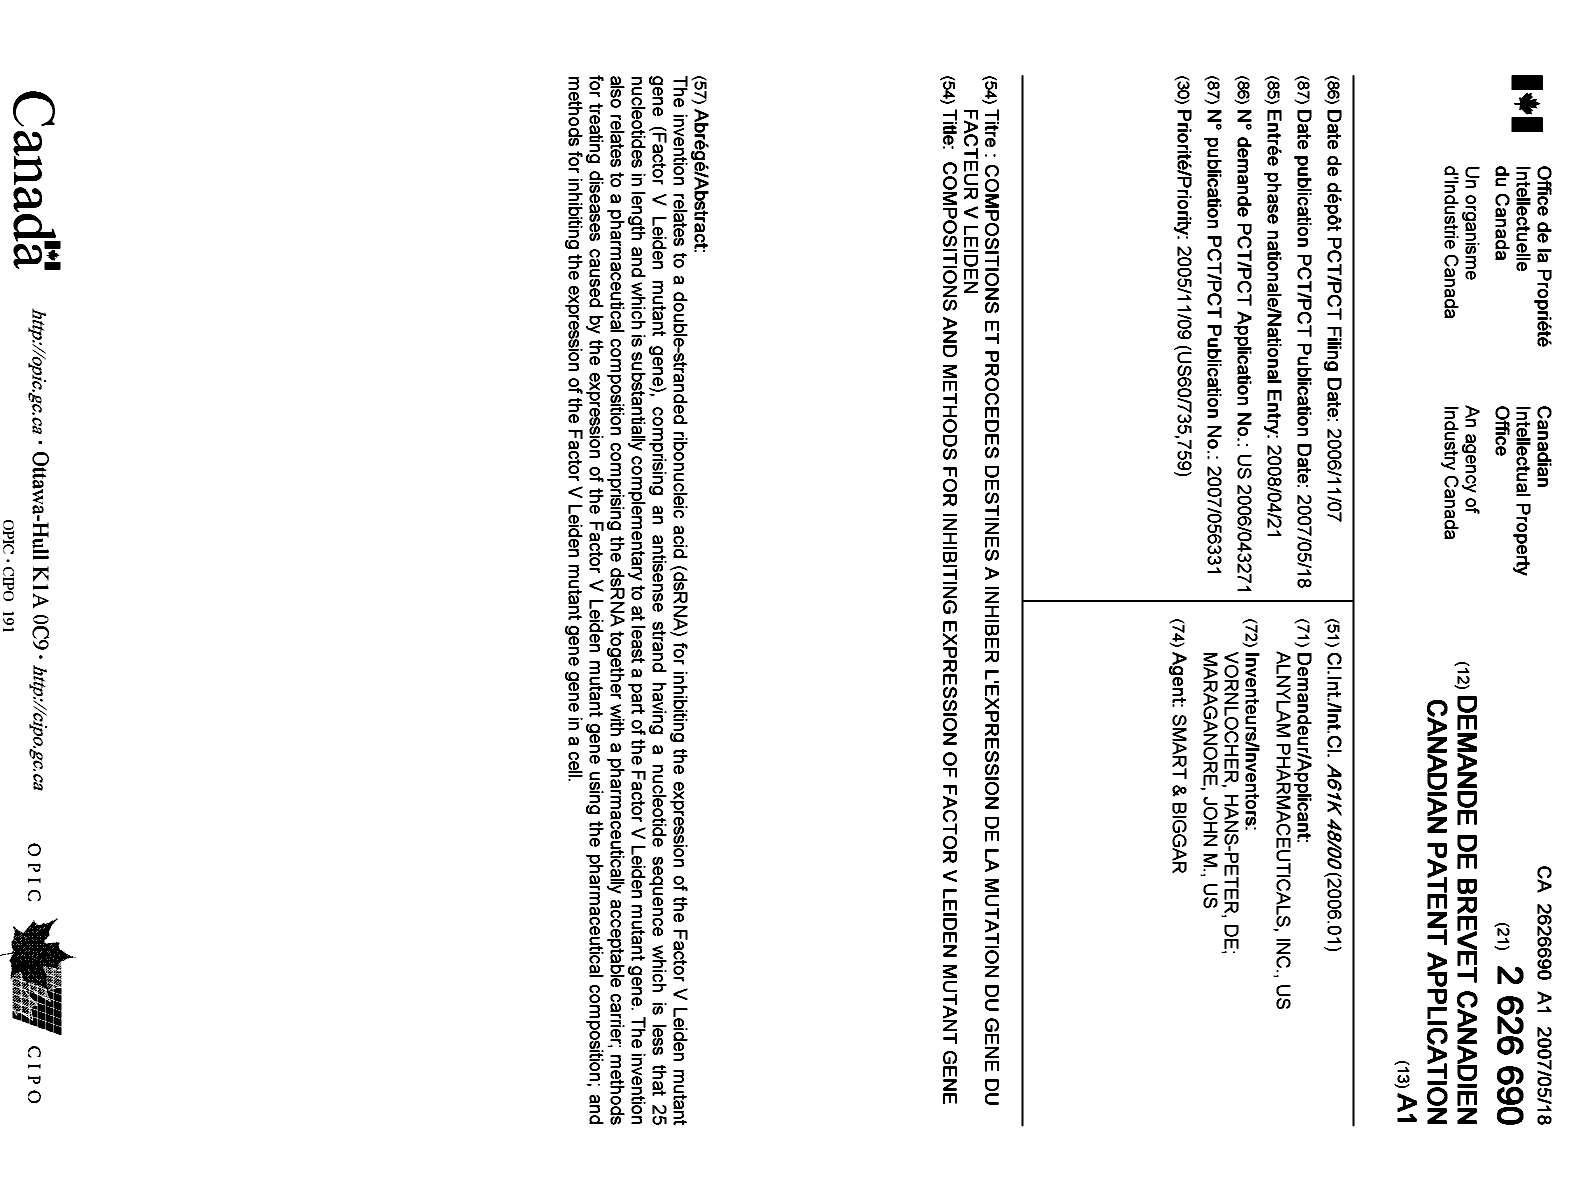 Document de brevet canadien 2626690. Page couverture 20071230. Image 1 de 1